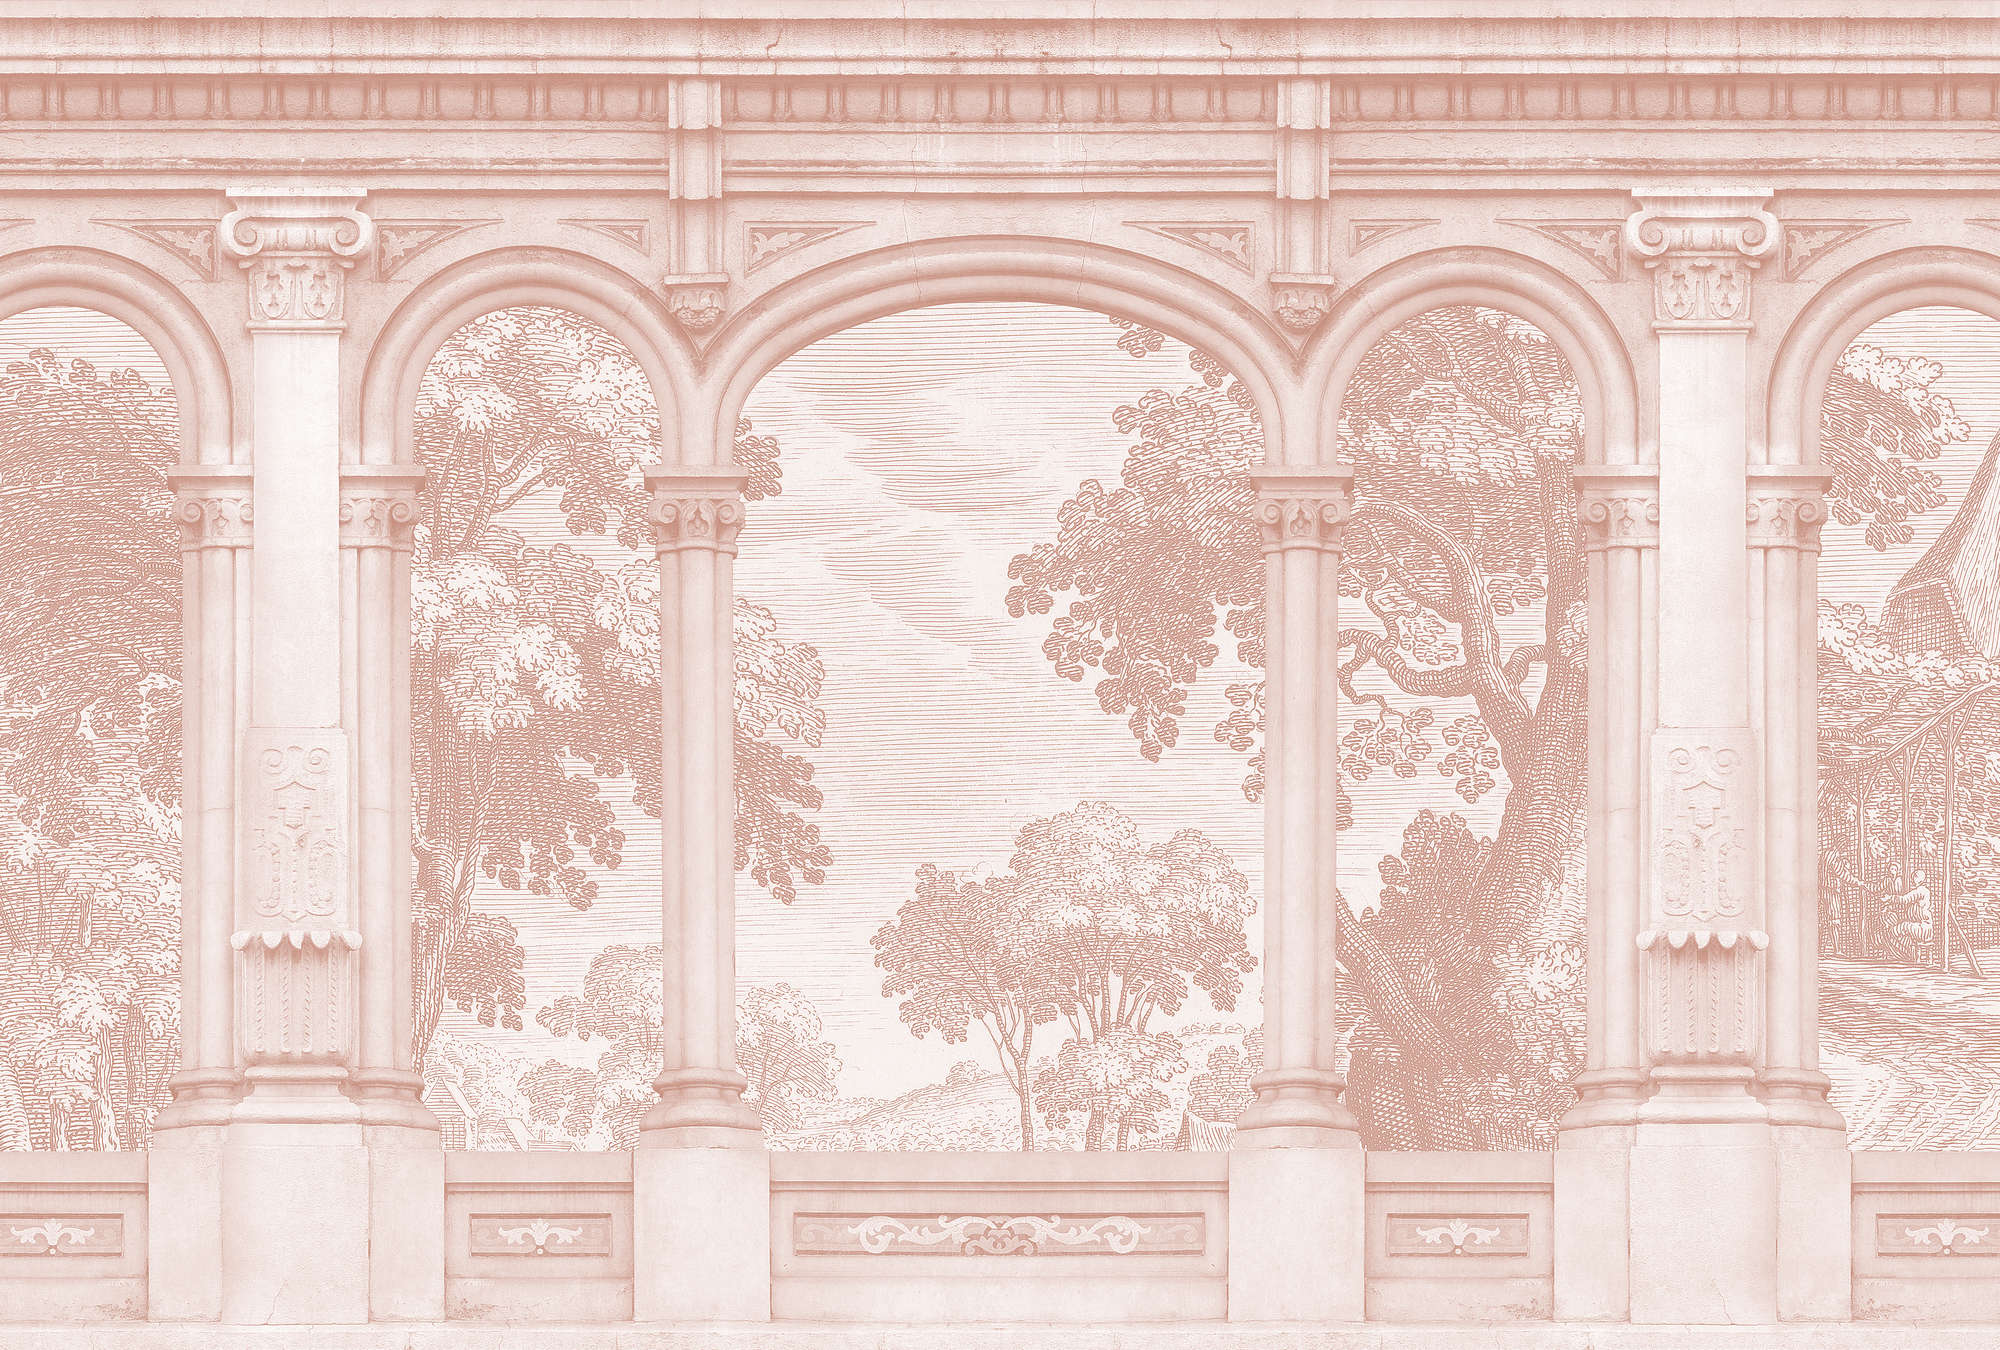             Roma 3 - Roze fotobehang Historisch ontwerp met rondboogvenster
        